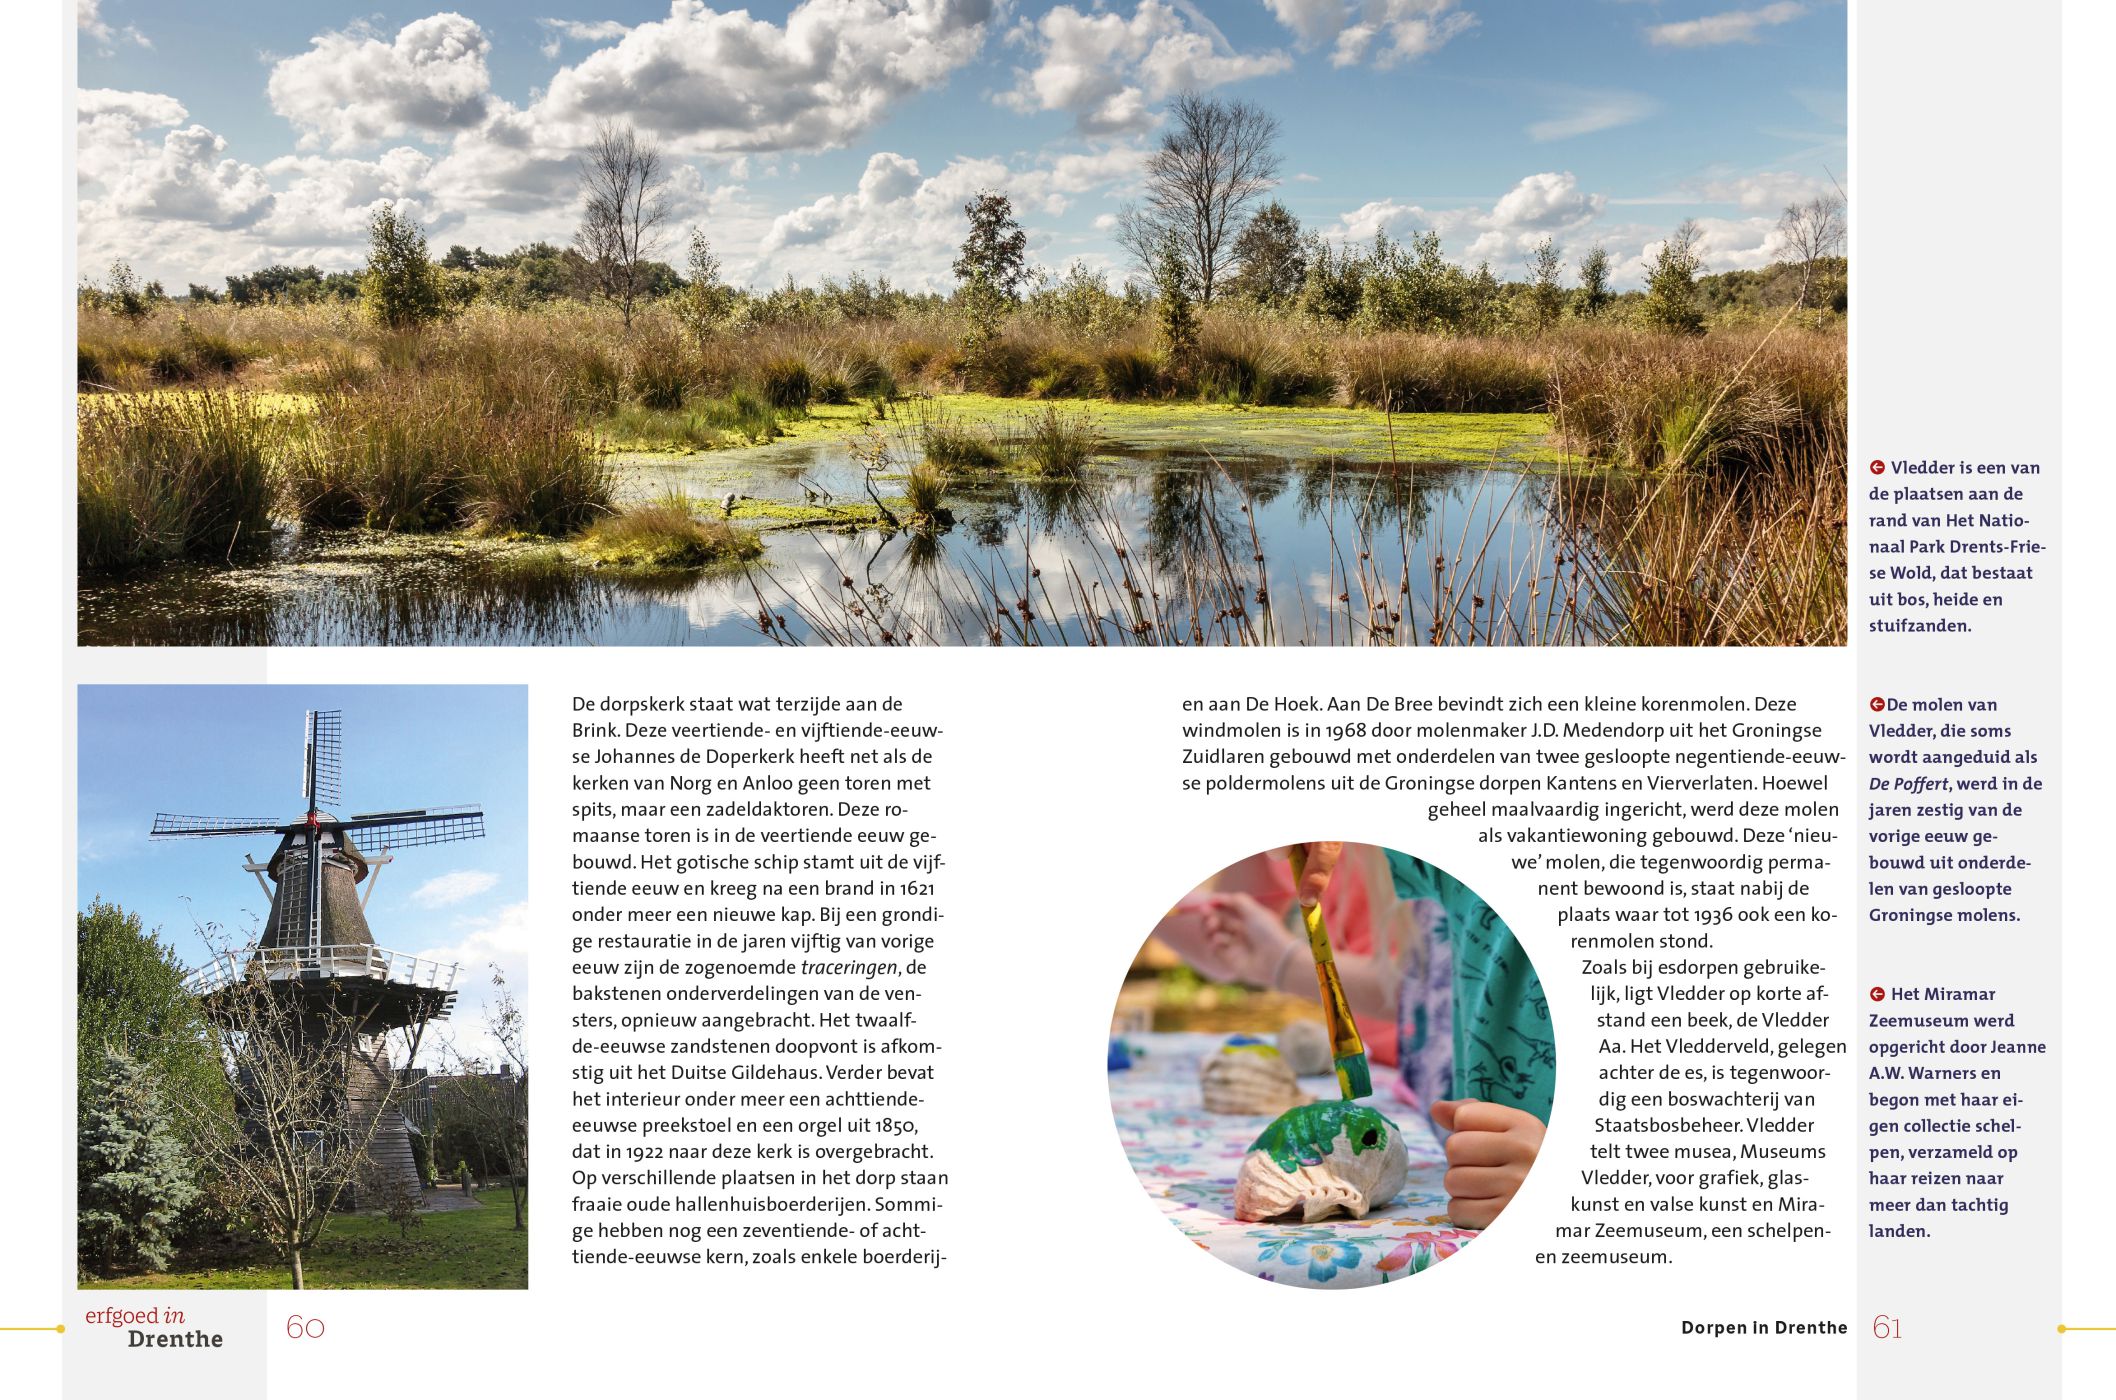 Inkijkexemplaar van het boek: <em>Erfgoed in Drenthe. Esdorpen en brinken</em> - © Uitgeverij Matrijs